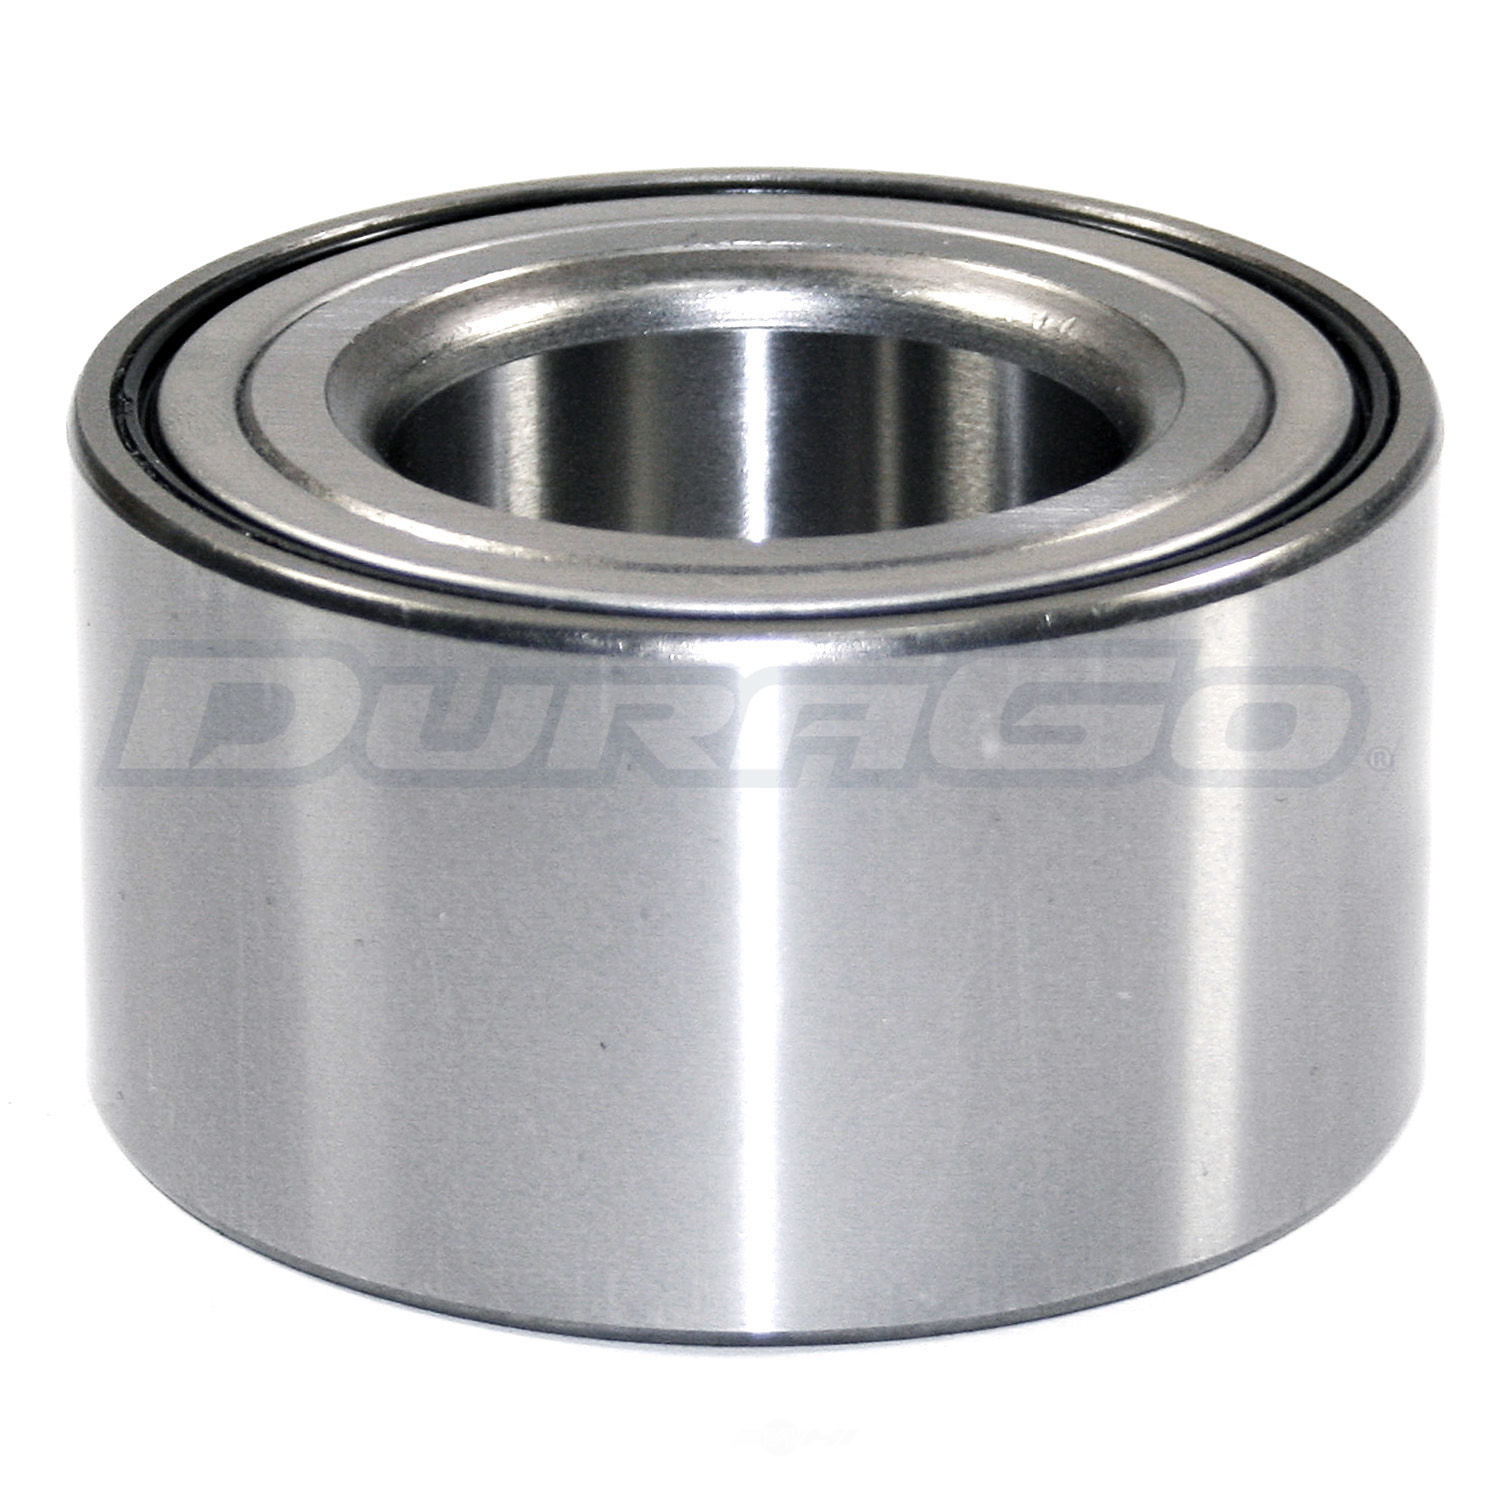 DURAGO - Wheel Bearing - D48 295-10063